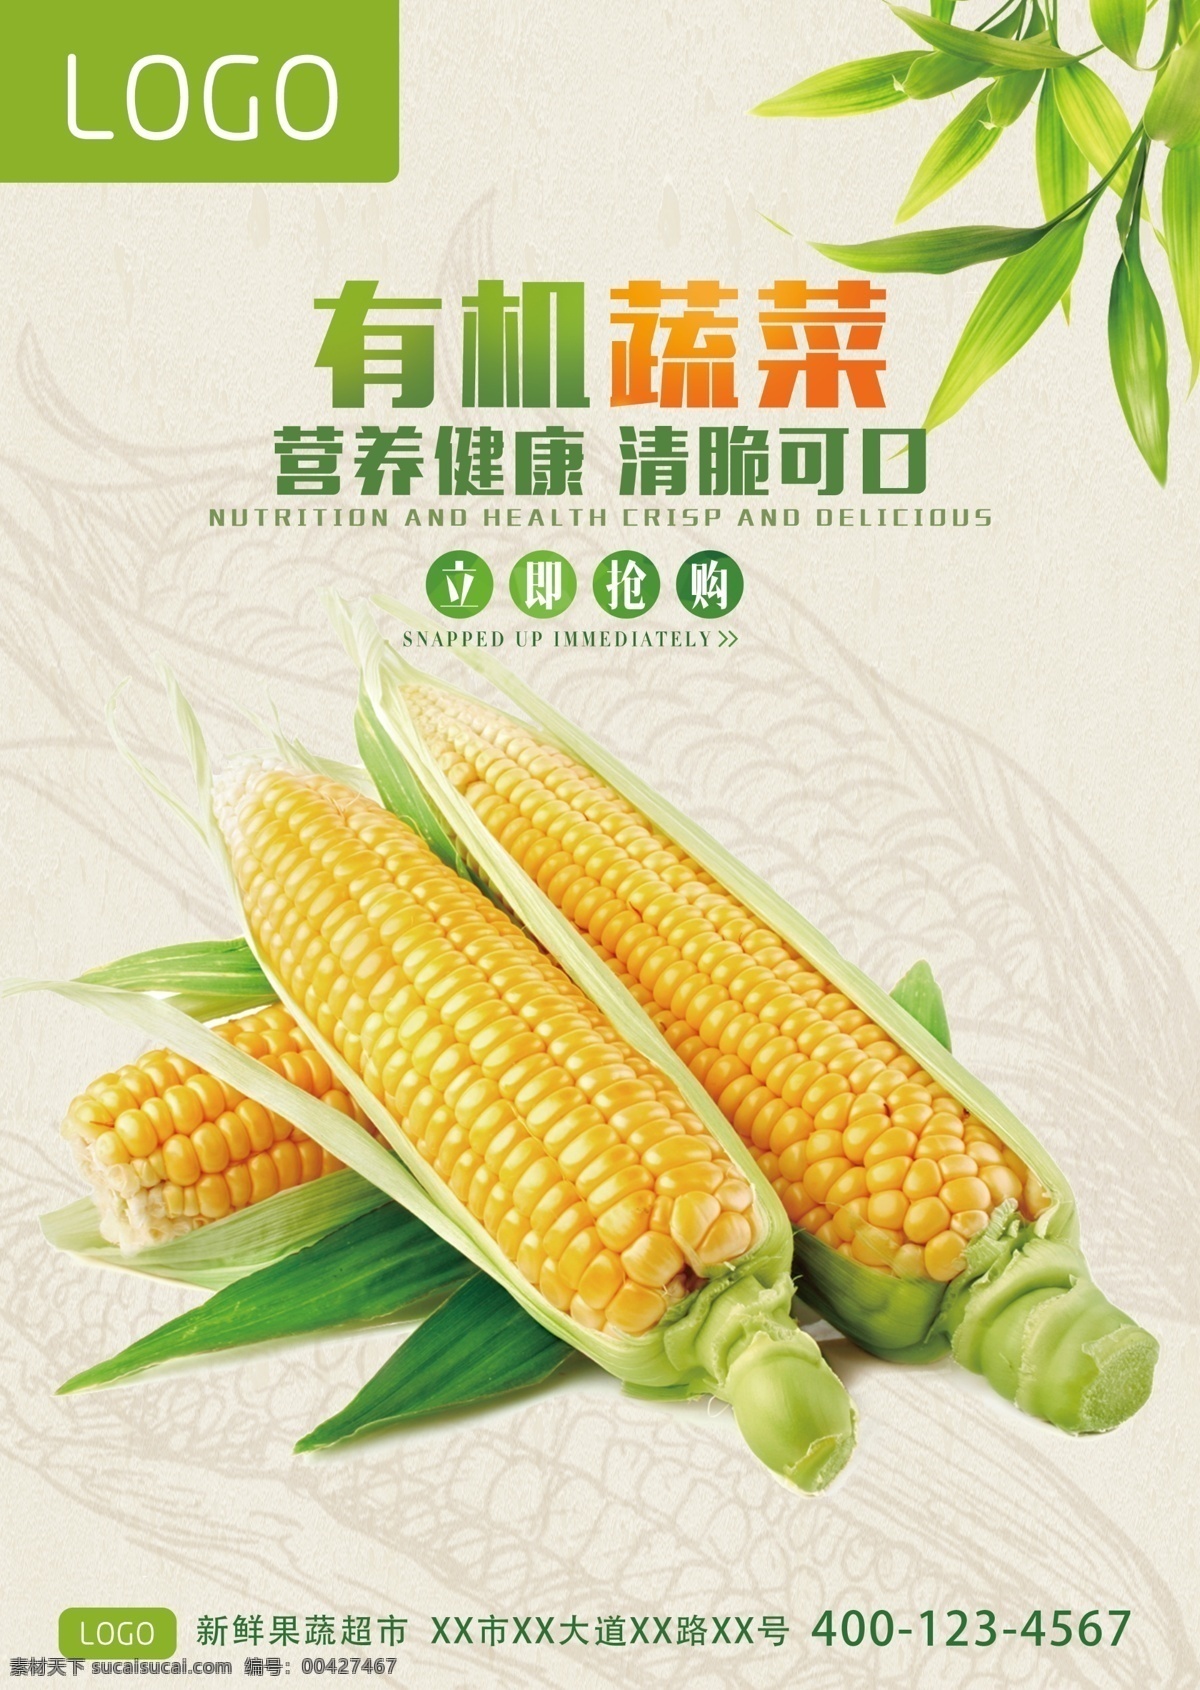 有机 蔬菜 玉米 海报 有机蔬菜 新鲜蔬菜 嫩玉米 清脆可口玉米 营养健康玉米 与你广告 新鲜果蔬 果蔬超市海报 新鲜玉米 宣传广告